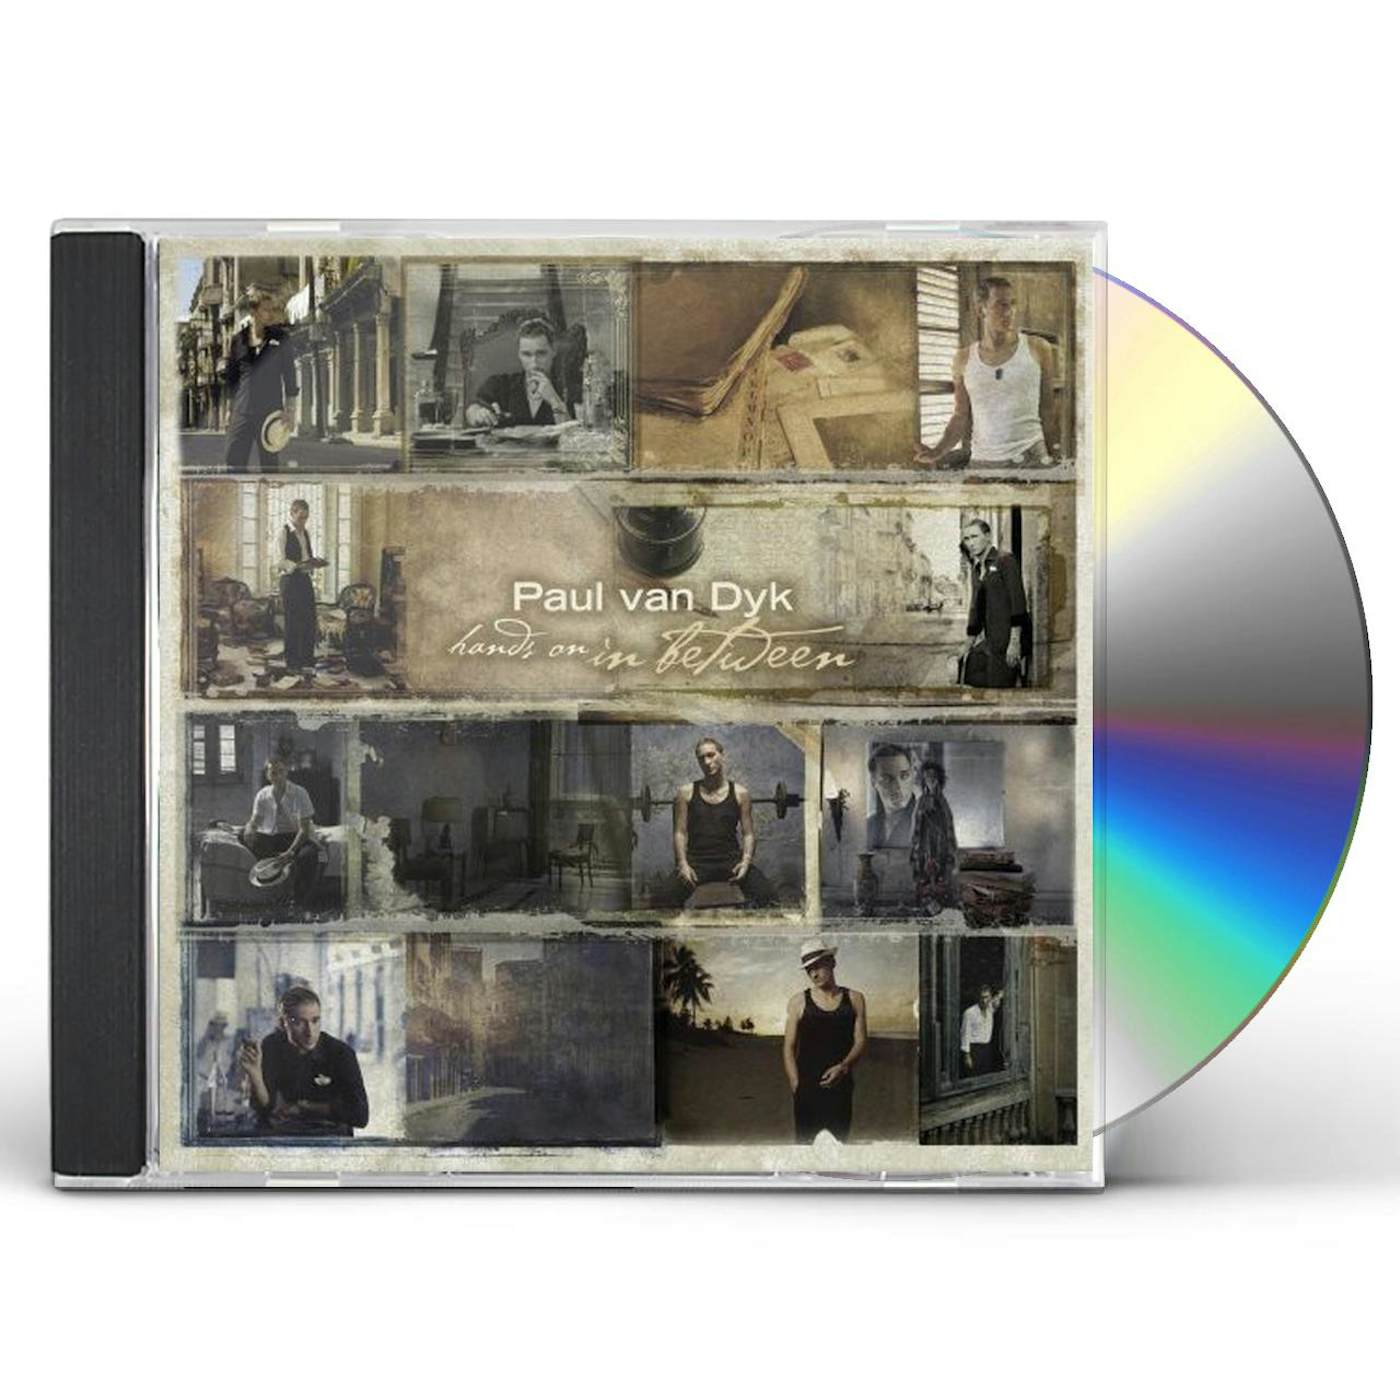 Paul van Dyk HANDS ON IN BETWEEN CD